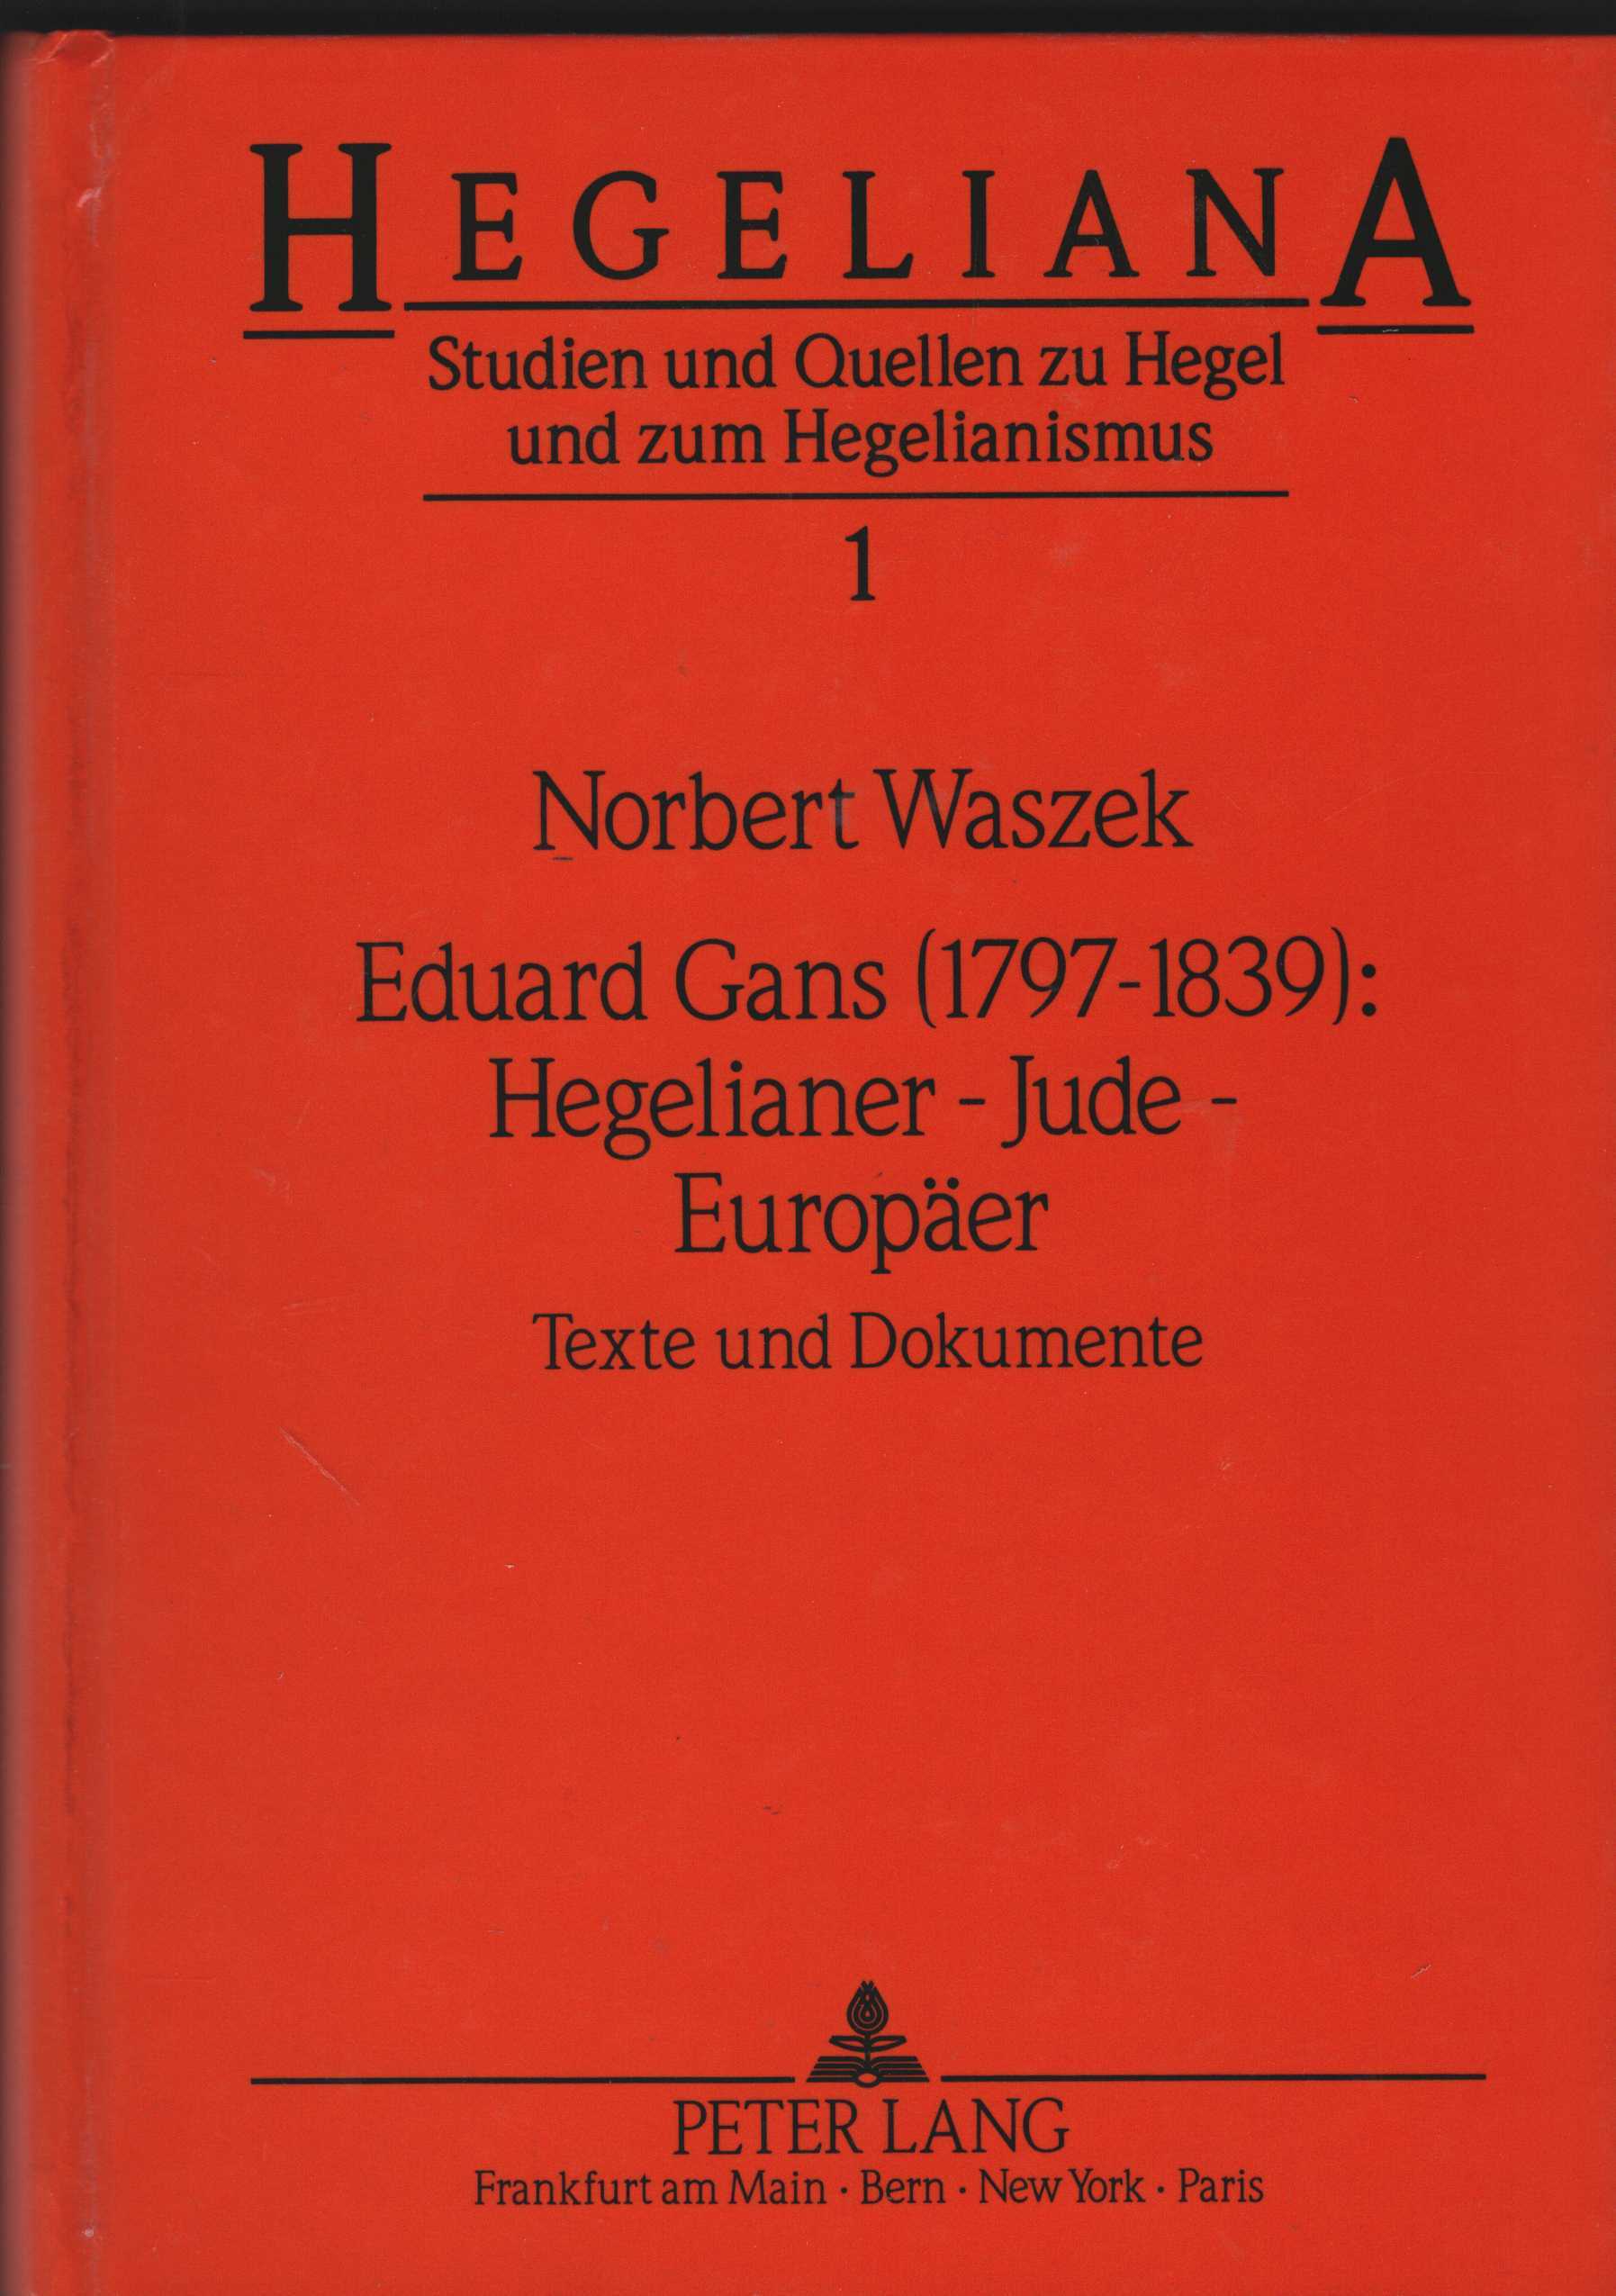 Eduard Gans (1797 - 1839). Hegelianer - Jude - Europäer. Texte und Dokumente. (= Hegeliana. Studien und Quellen zu Hegel und zum Hegelianismus. Herausgegeben von Helmut Schneider. Band 1). - Gans, Eduard und Norbert Waszek